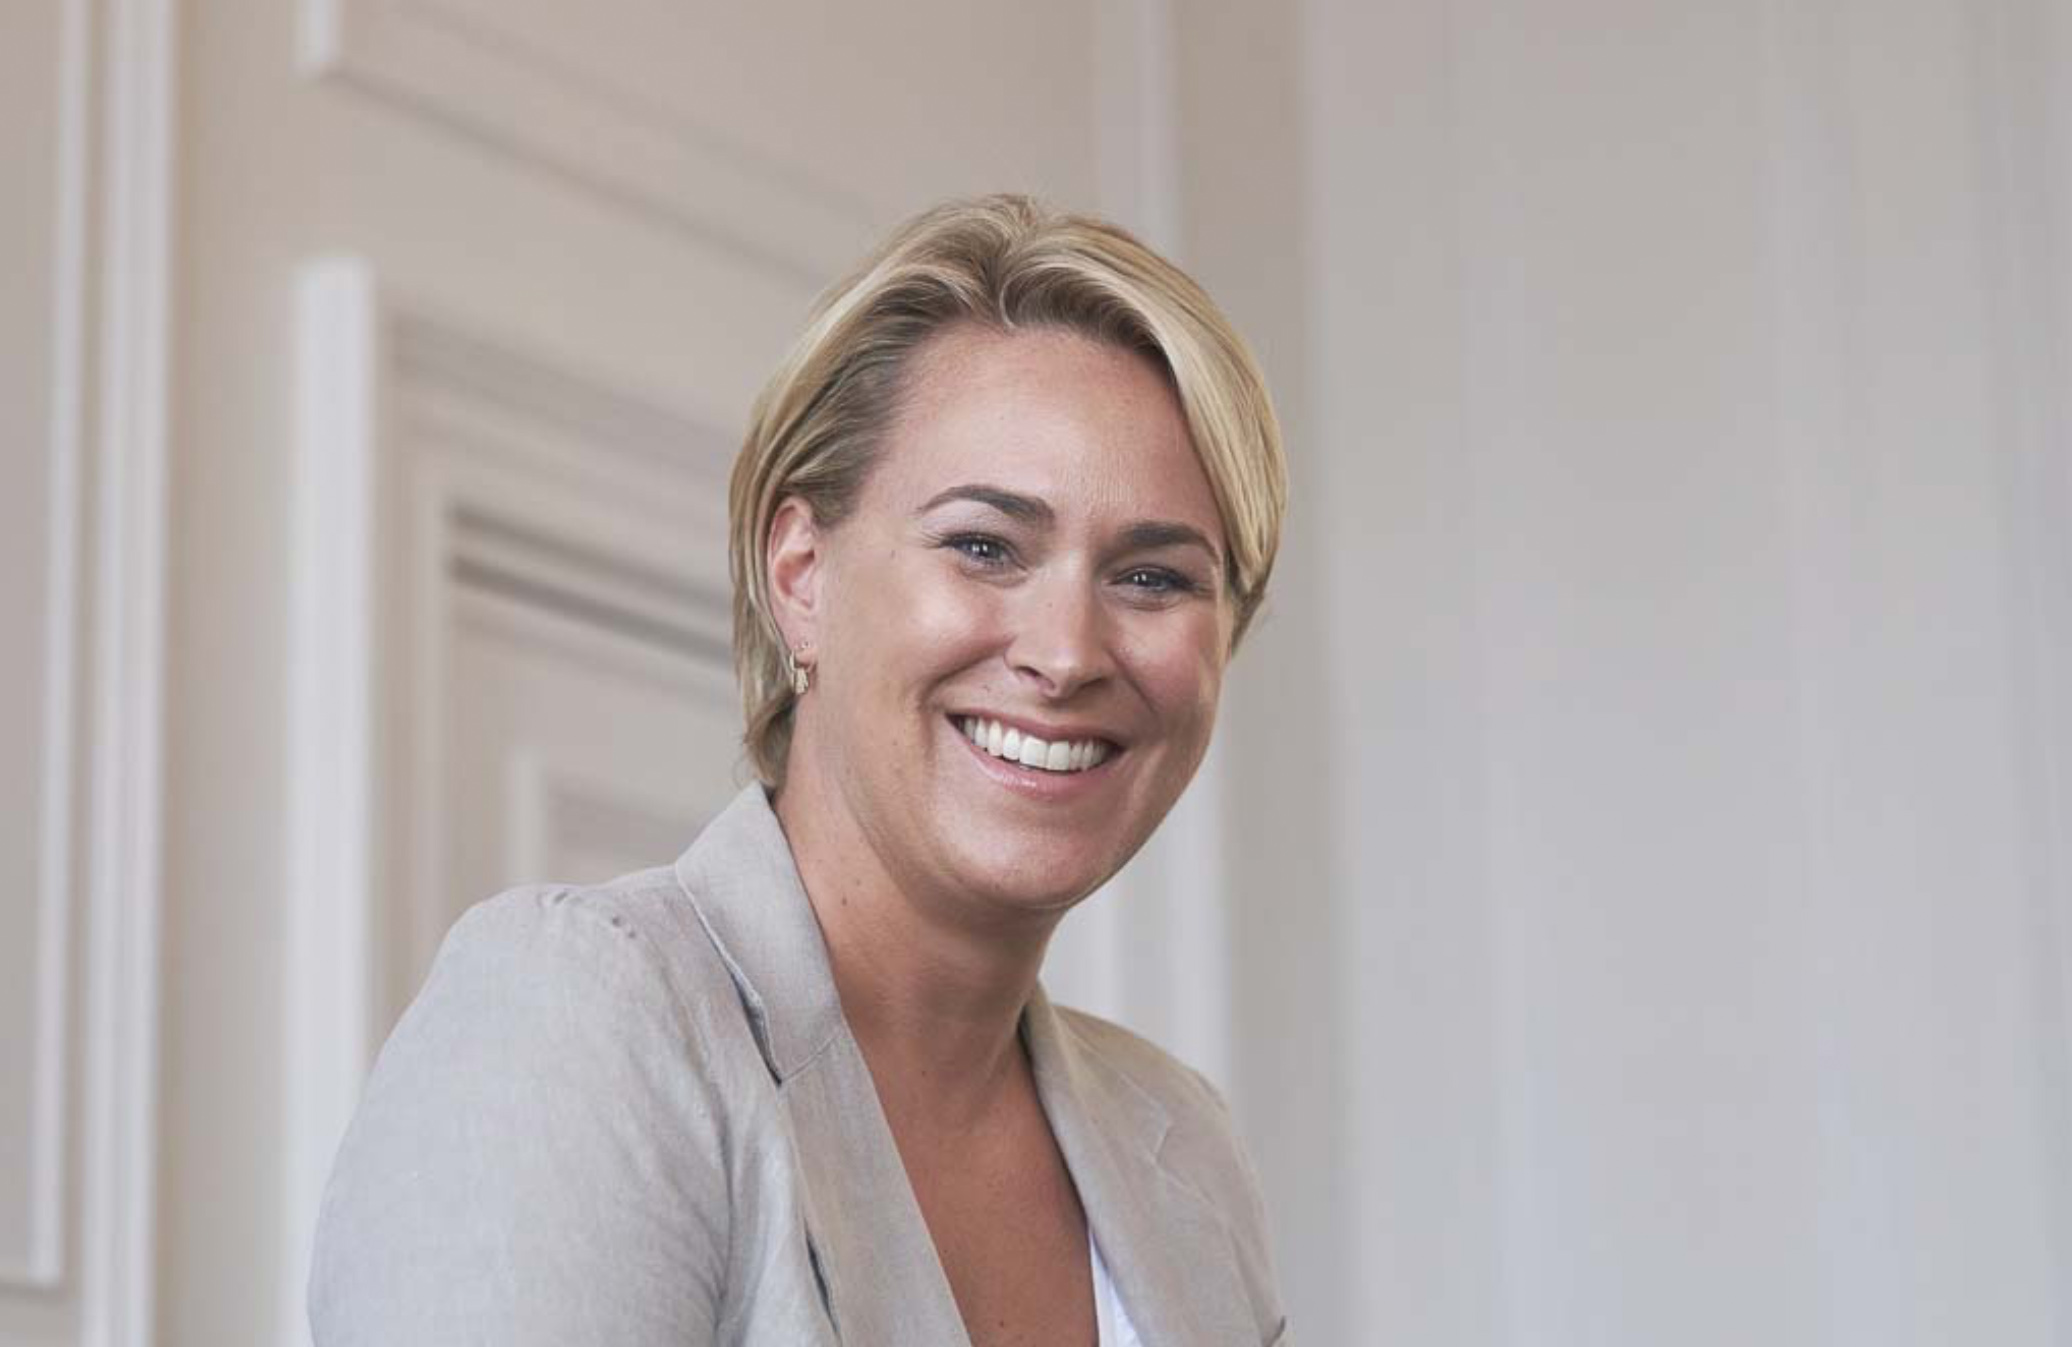 Reportage photo sur la Ministre Céline Fremault